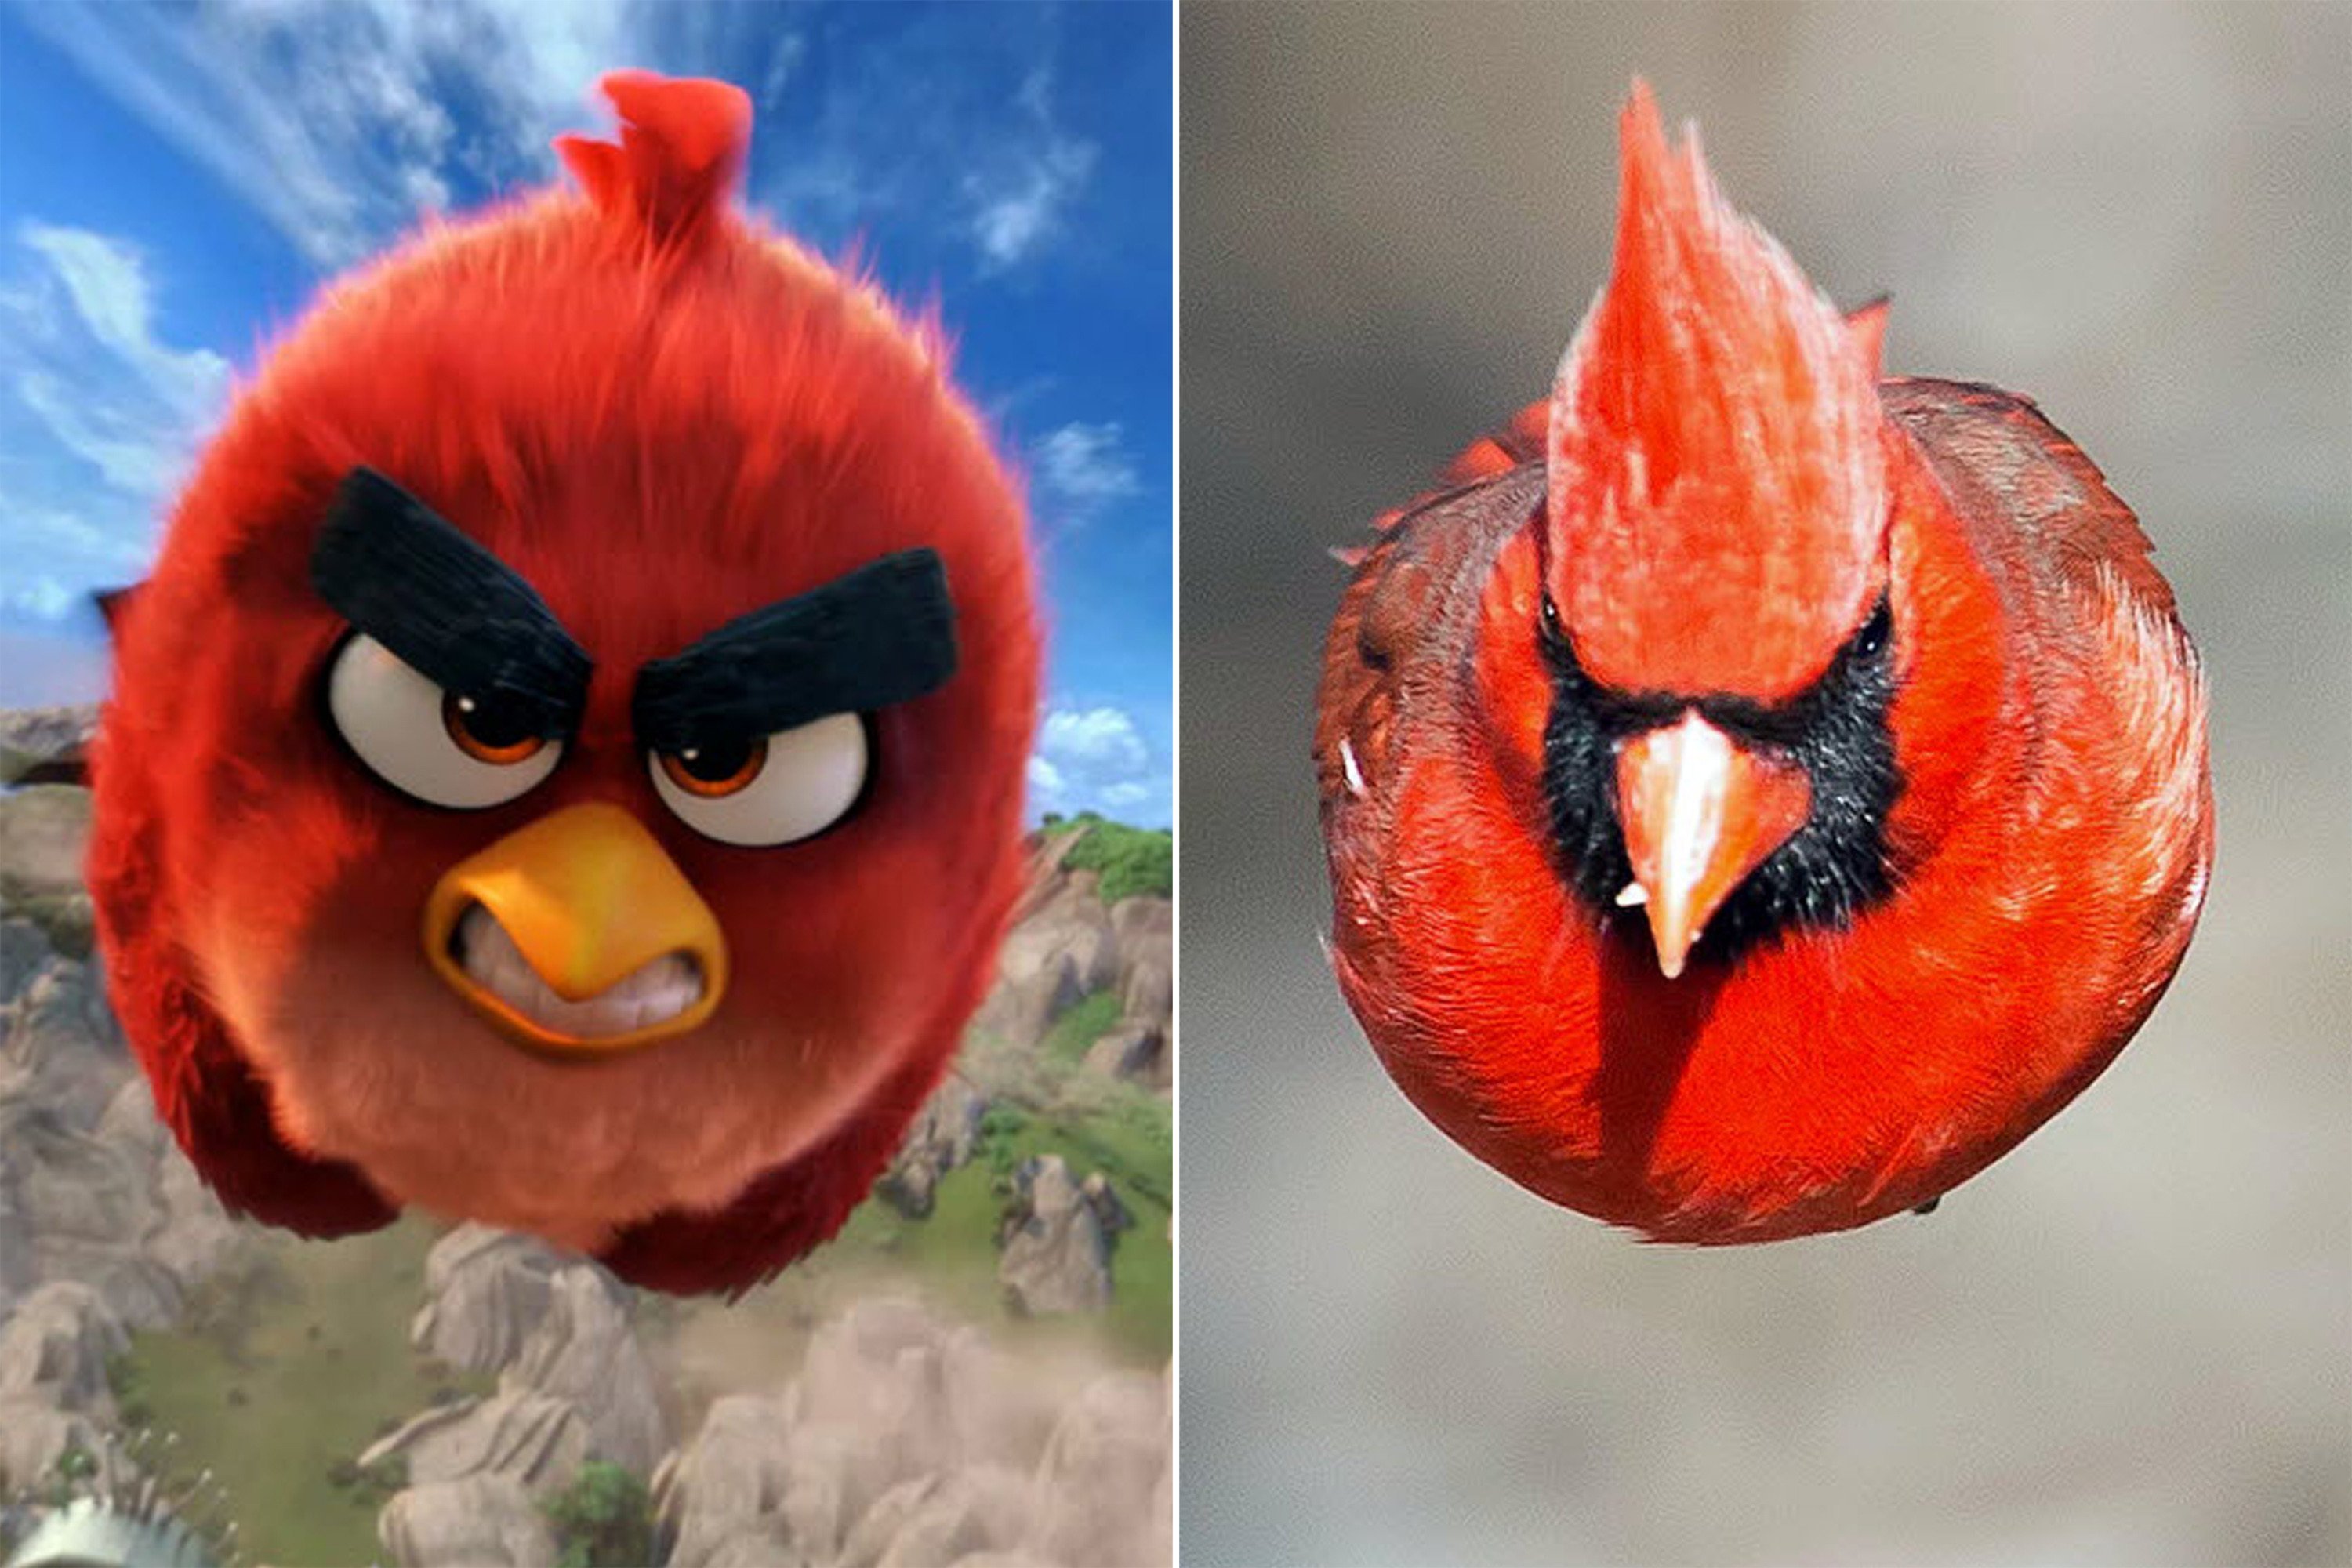 Birds wiki. Птицы Angry Birds в реальности. Angry Birds красная птичка. Красная птица Энгри Бердс злая. Энгри бердз в реальной жизни ред.